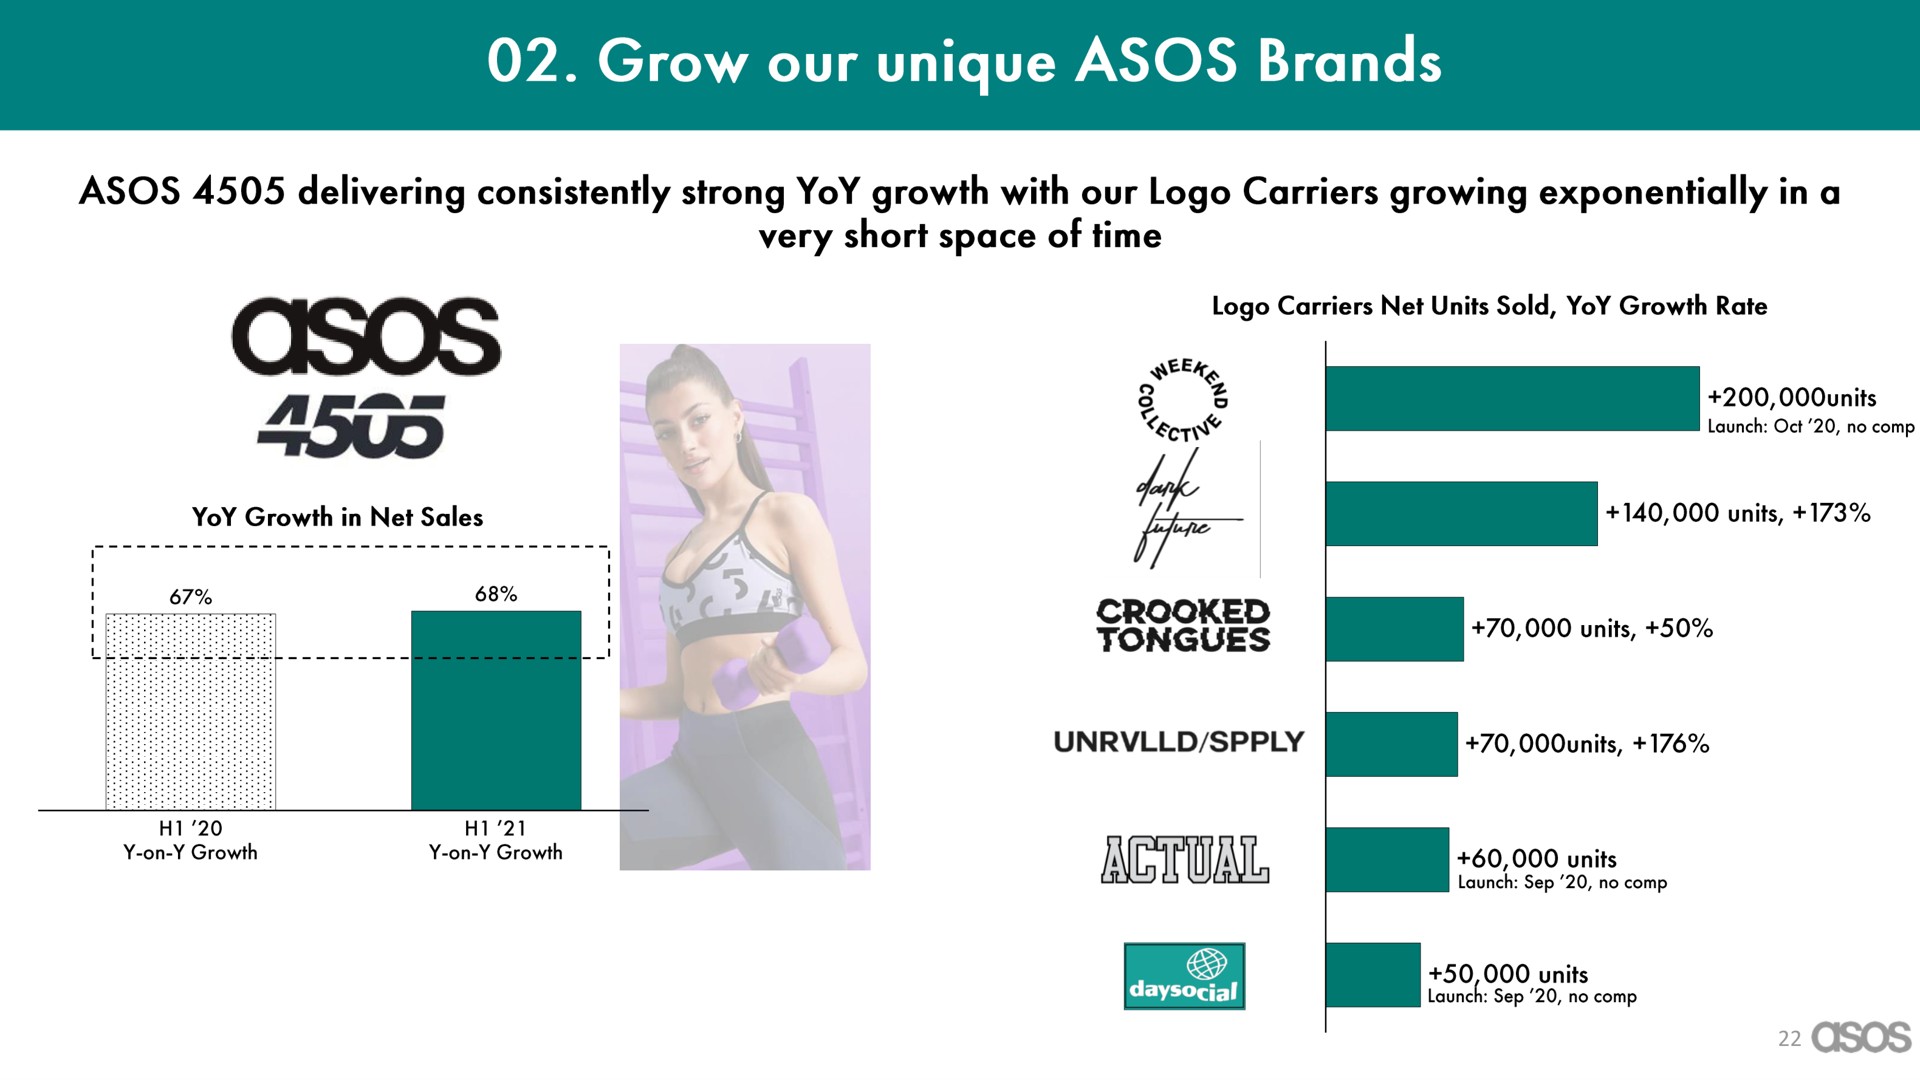 grow our unique brands | Asos